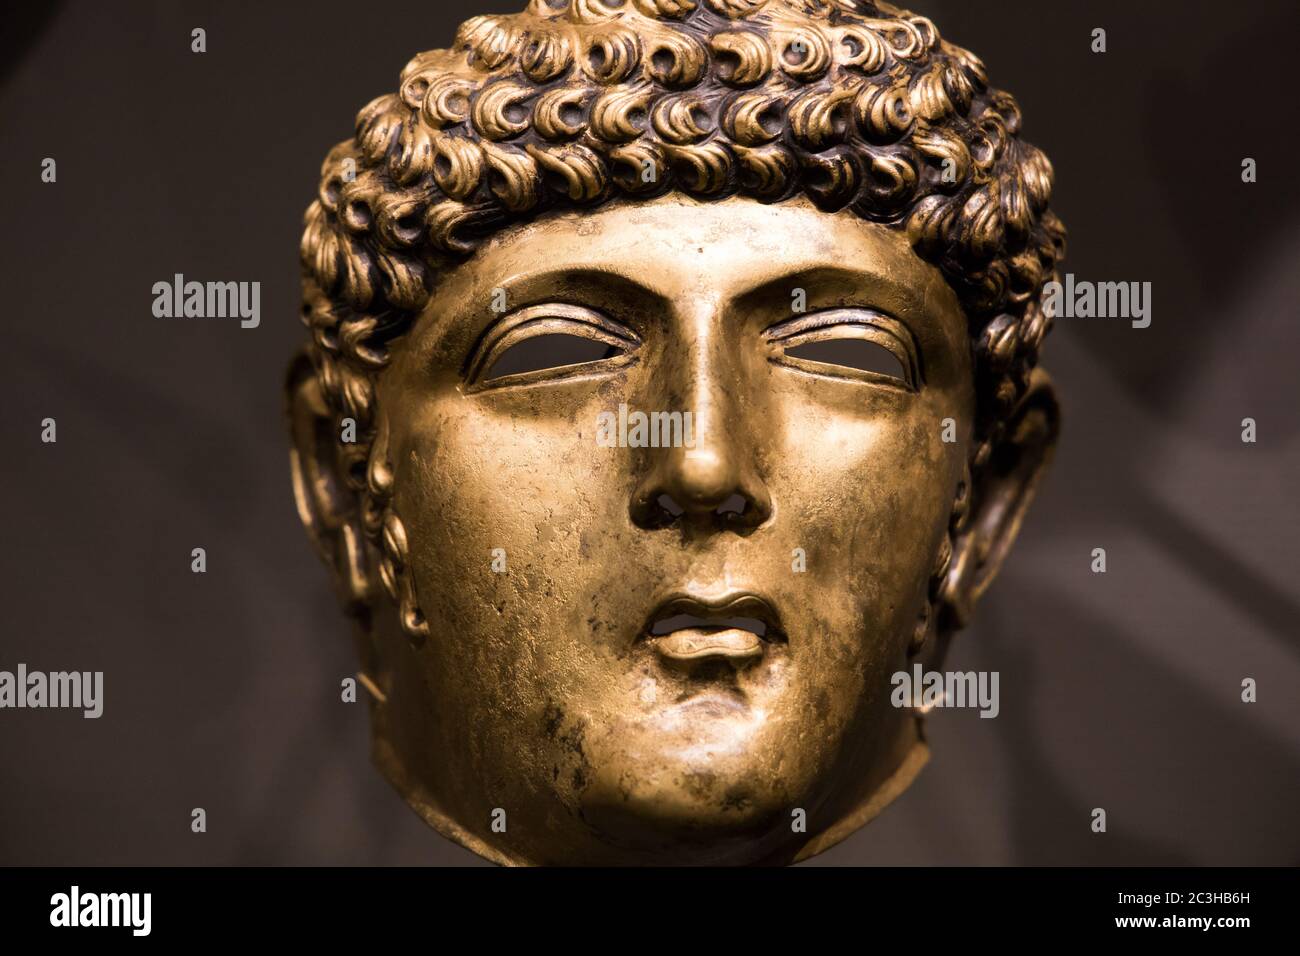 Leiden, Paesi Bassi - 04 GENNAIO 2020: Primo piano di una maschera equestre romana di bronzo del periodo romano dei Paesi Bassi (80-125 d.C.). Una maschera Gordon. Foto Stock